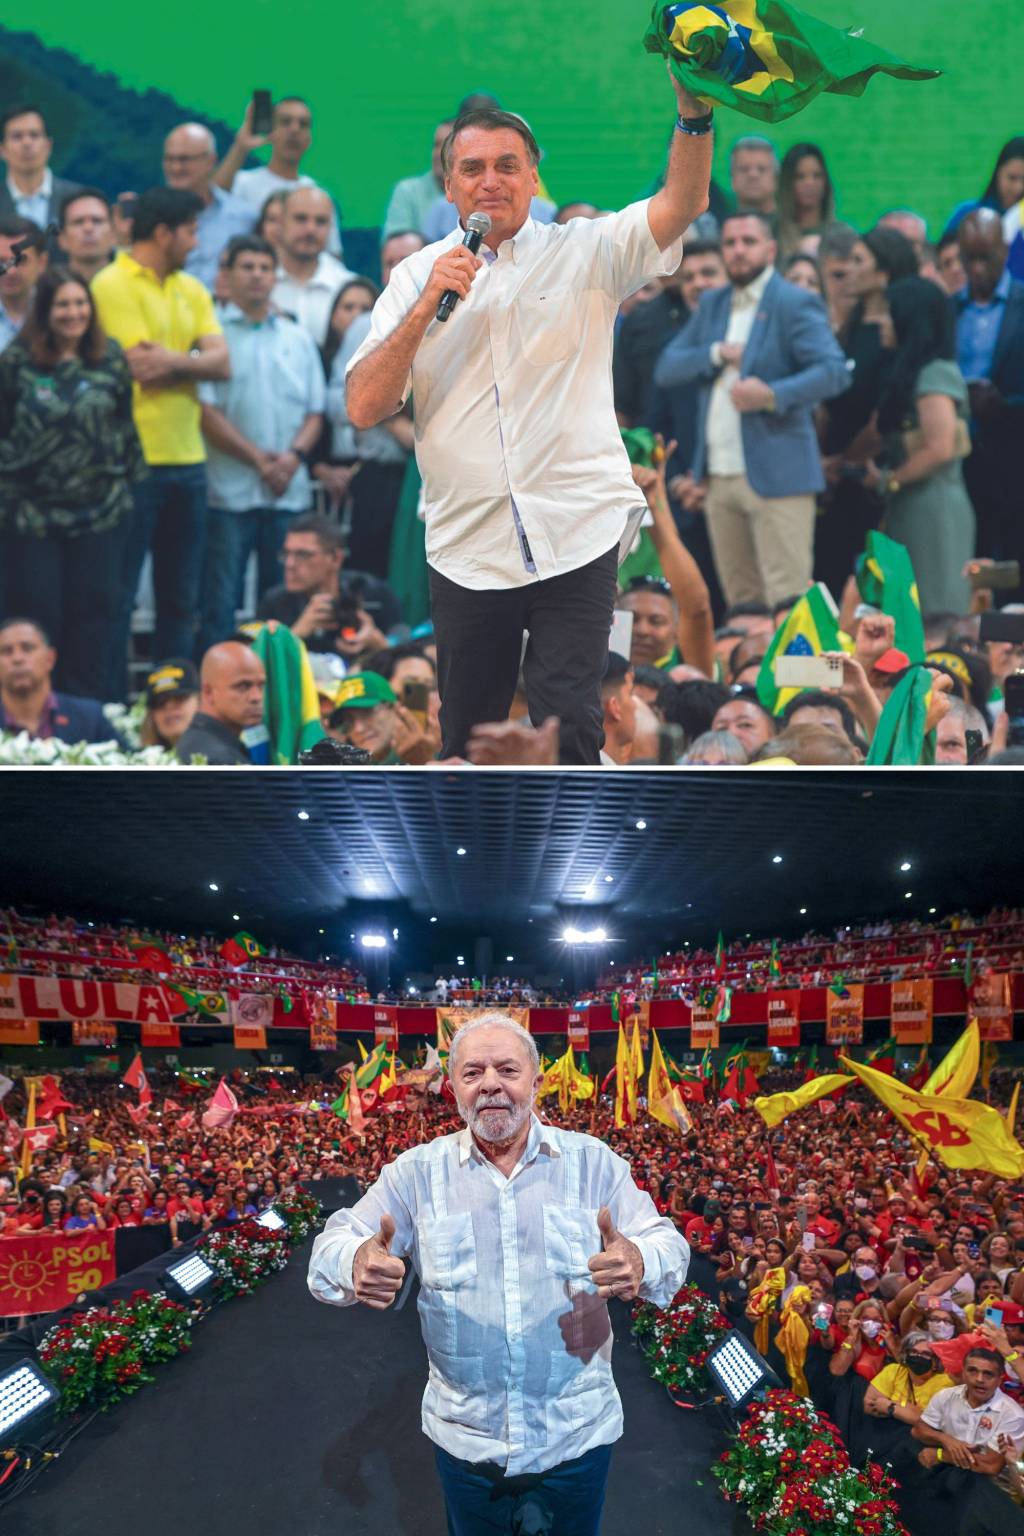 PRIORIDADES - Bolsonaro e Lula: o PL vai distribuir recursos para candidatos à Câmara, enquanto o PT concentrará os gastos na campanha do ex-presidente -